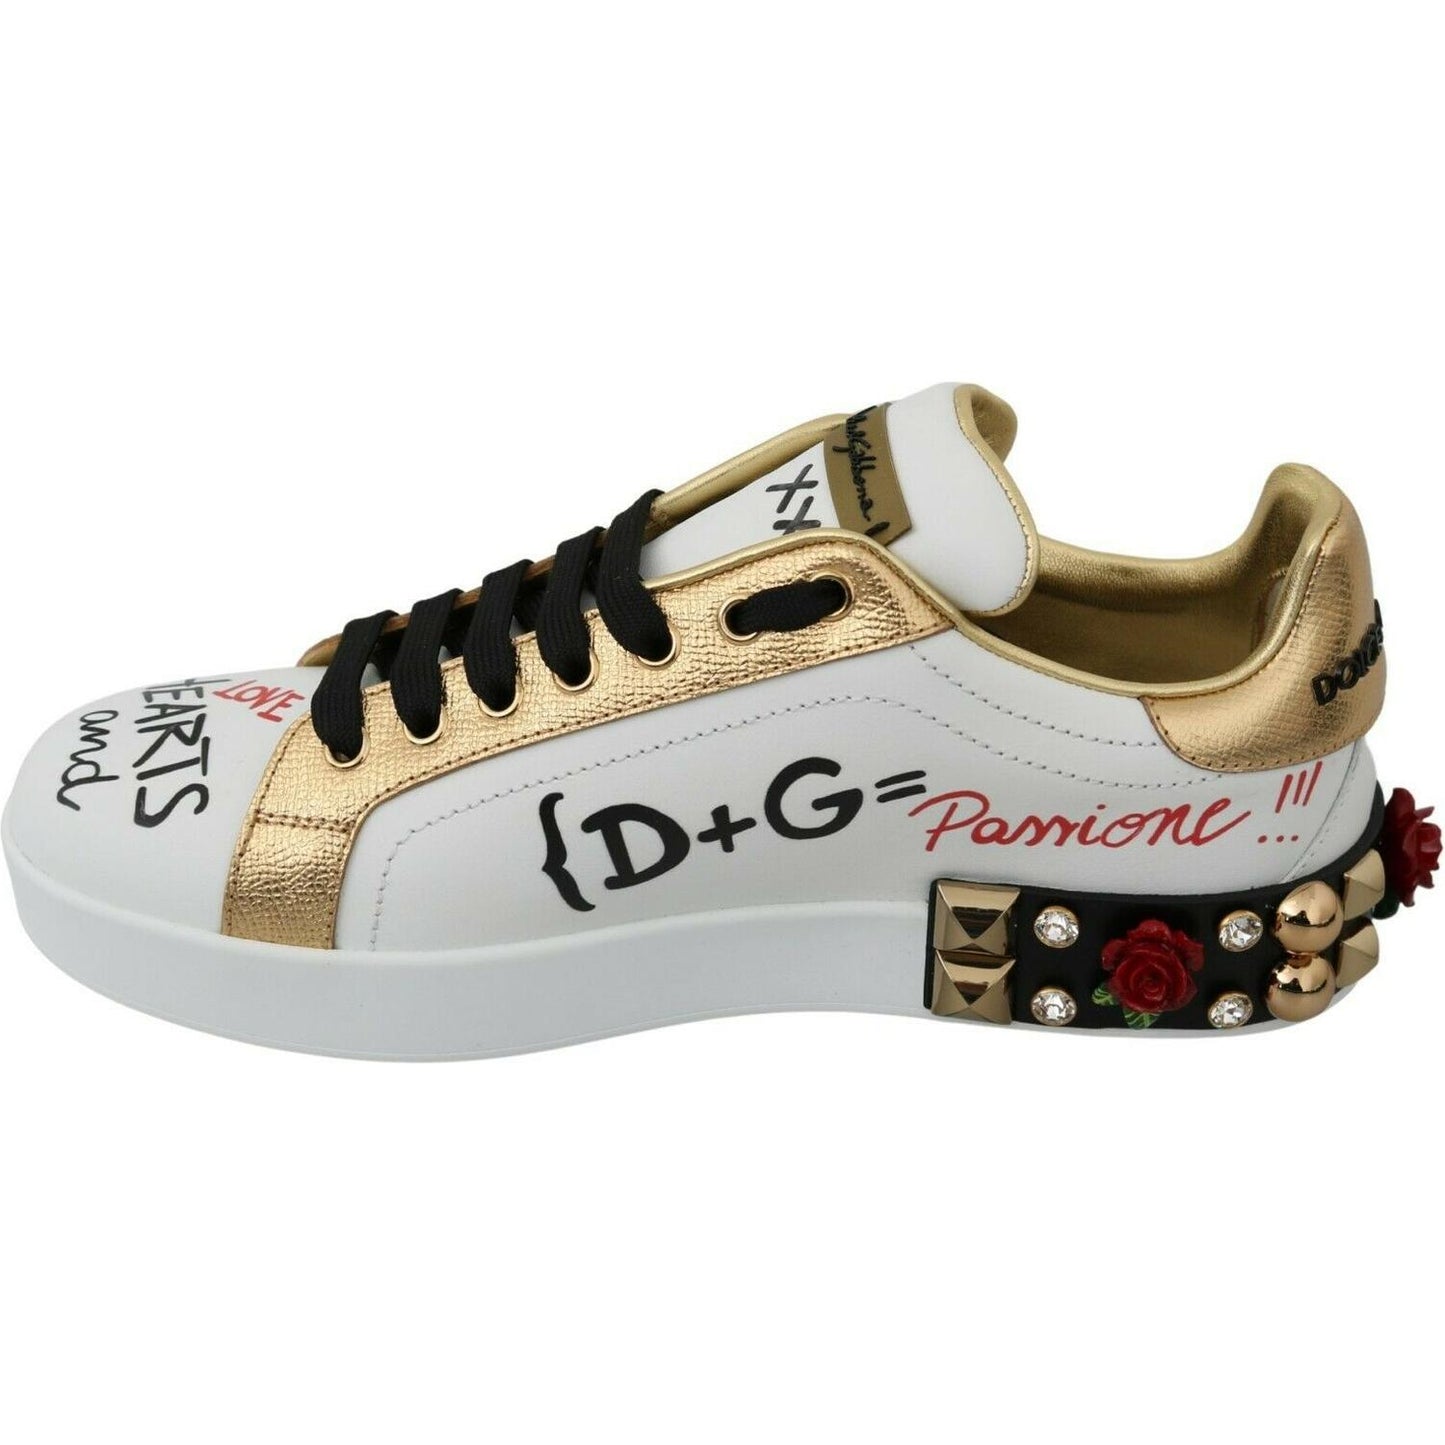 Dolce & Gabbana | Elegant Sequined Floral Leather Sneakers| McRichard Designer Brands   